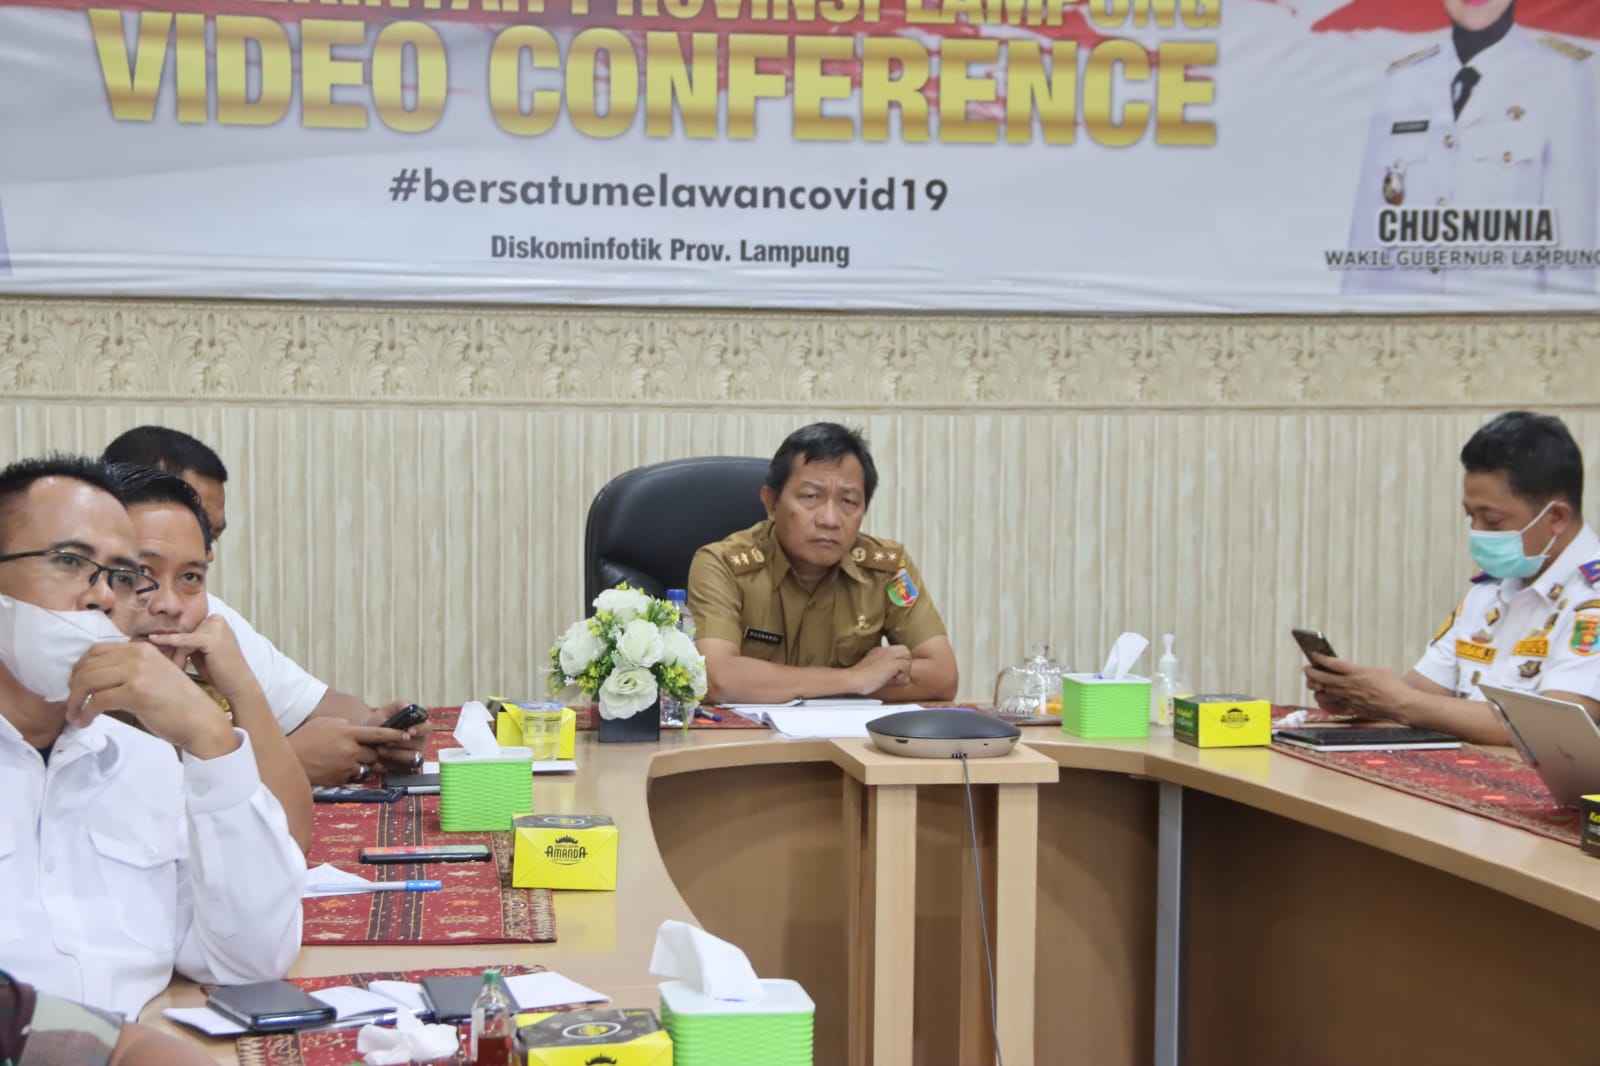 Pemprov Lampung Mengikuti Rapat Koordinasi Pengendalian Inflasi Daerah Bersama Mendagri